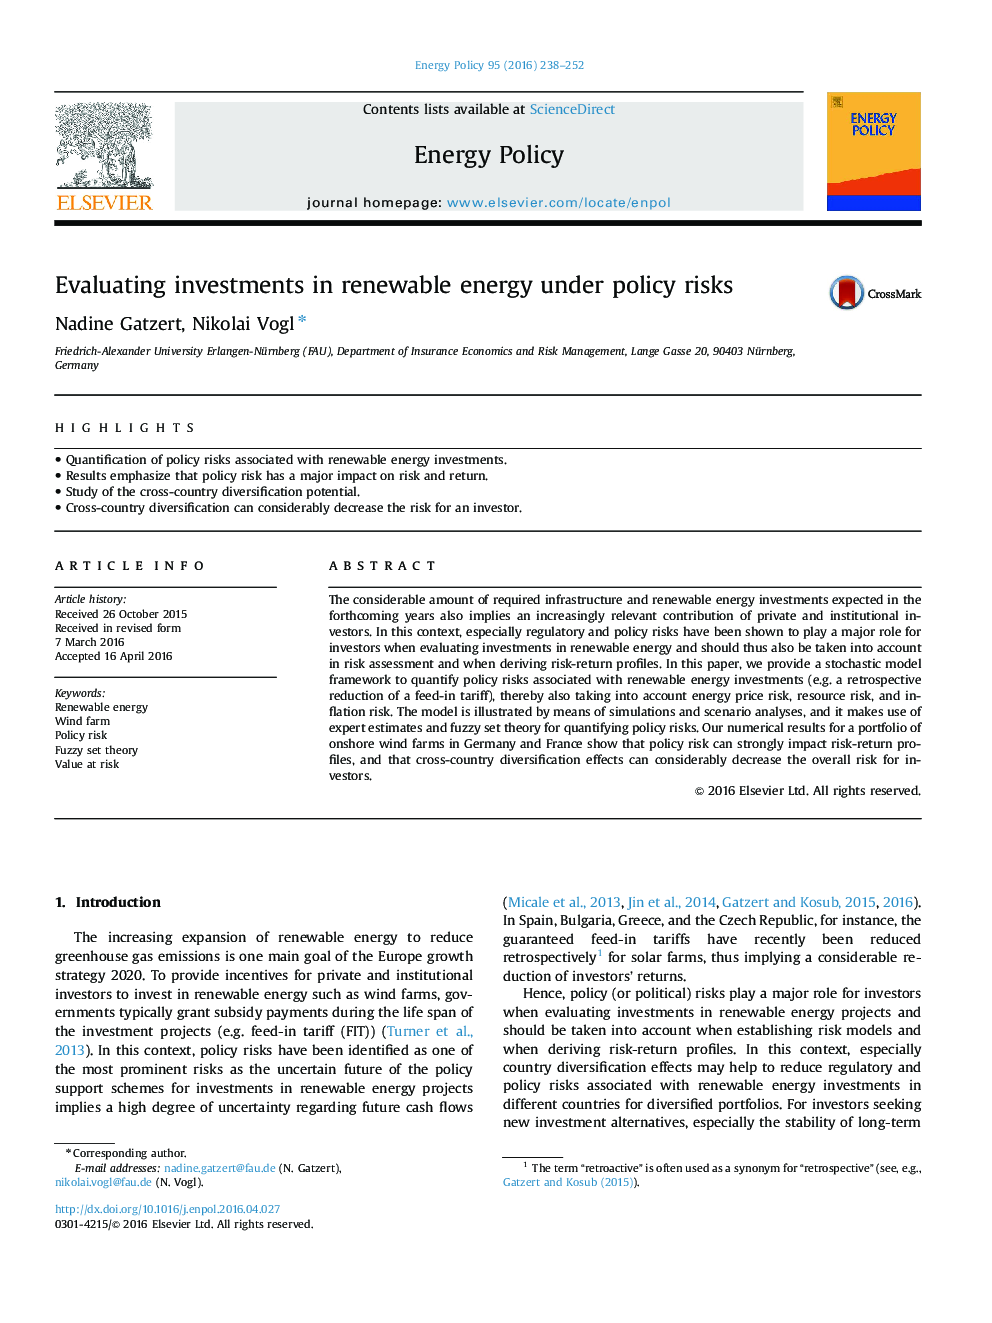 ارزیابی سرمایه گذاری در انرژی های تجدید پذیر تحت خطرات خط مشی 